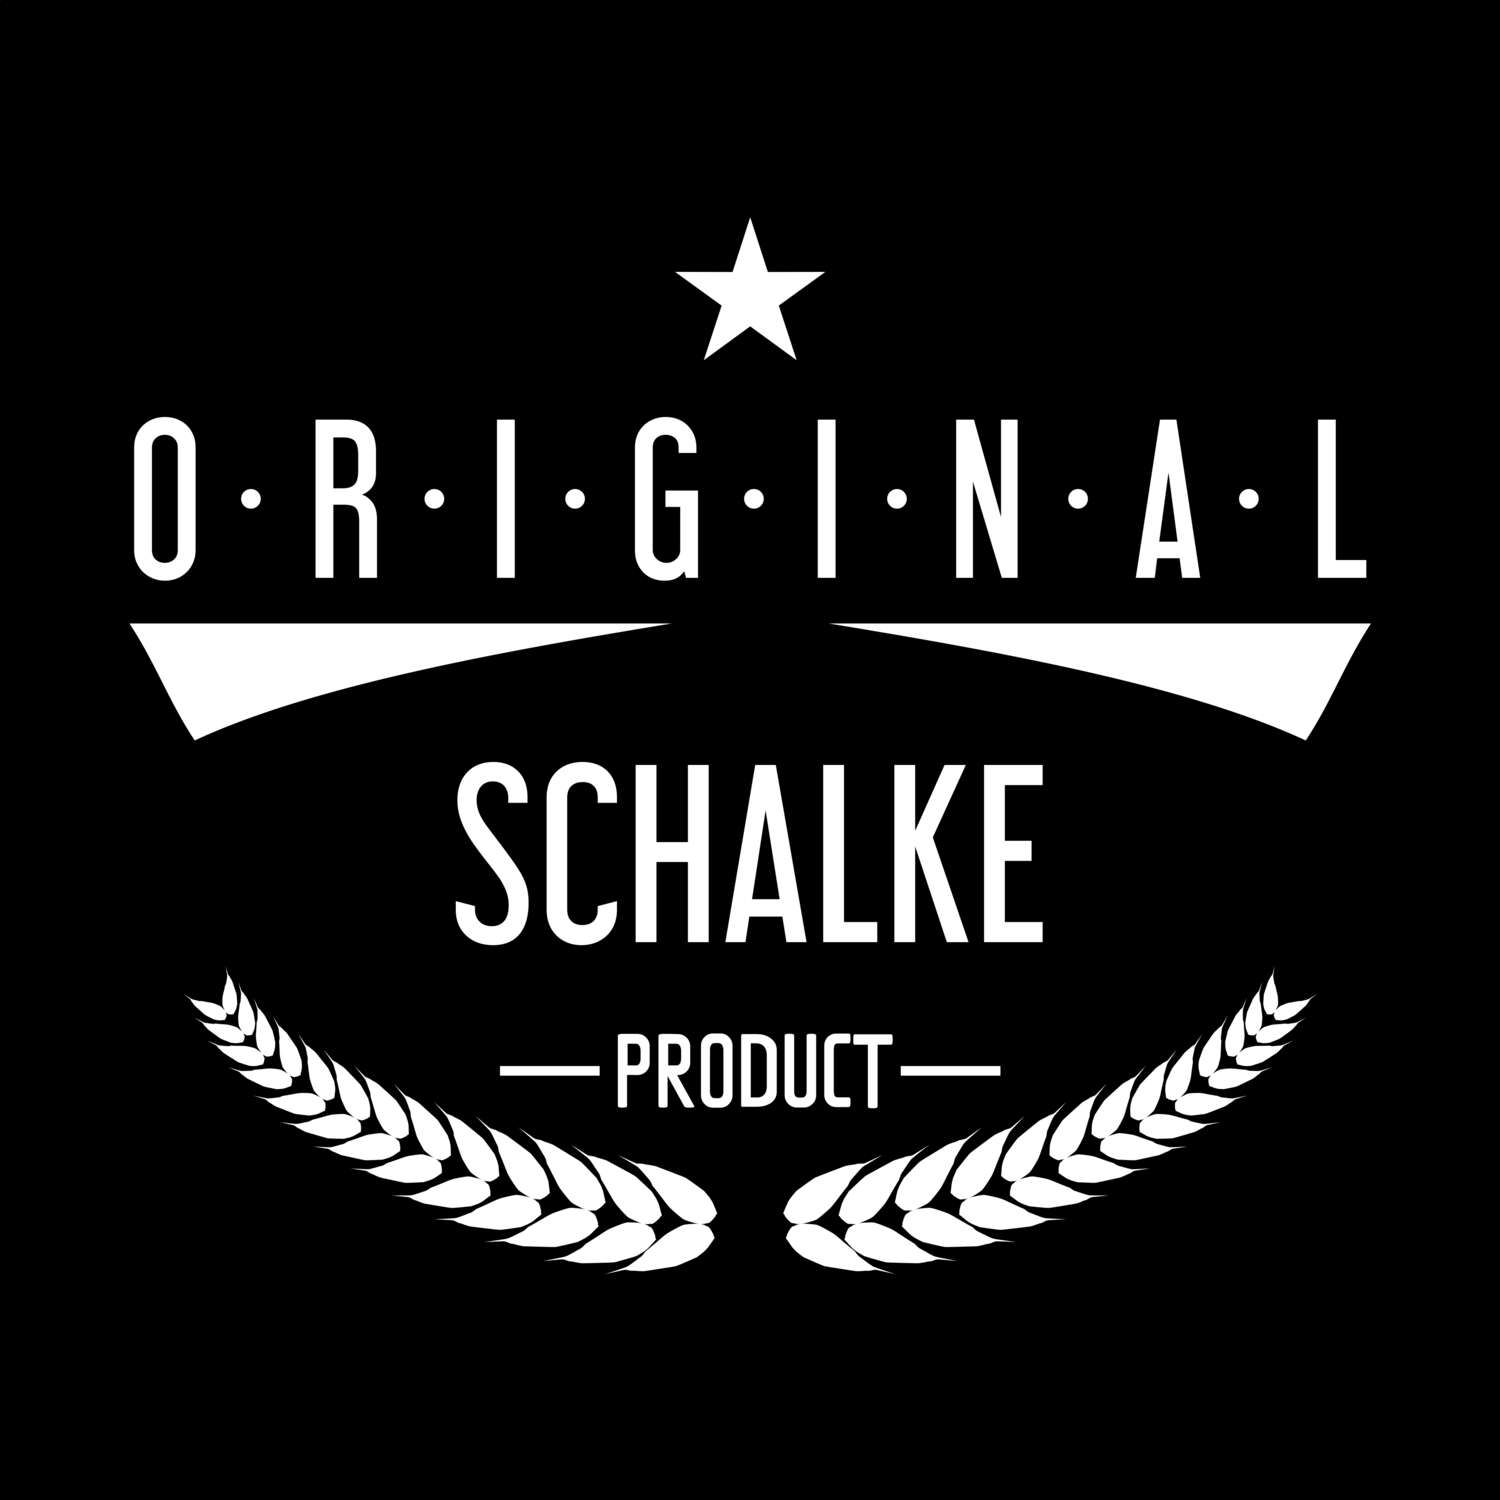 Schalke T-Shirt »Original Product«